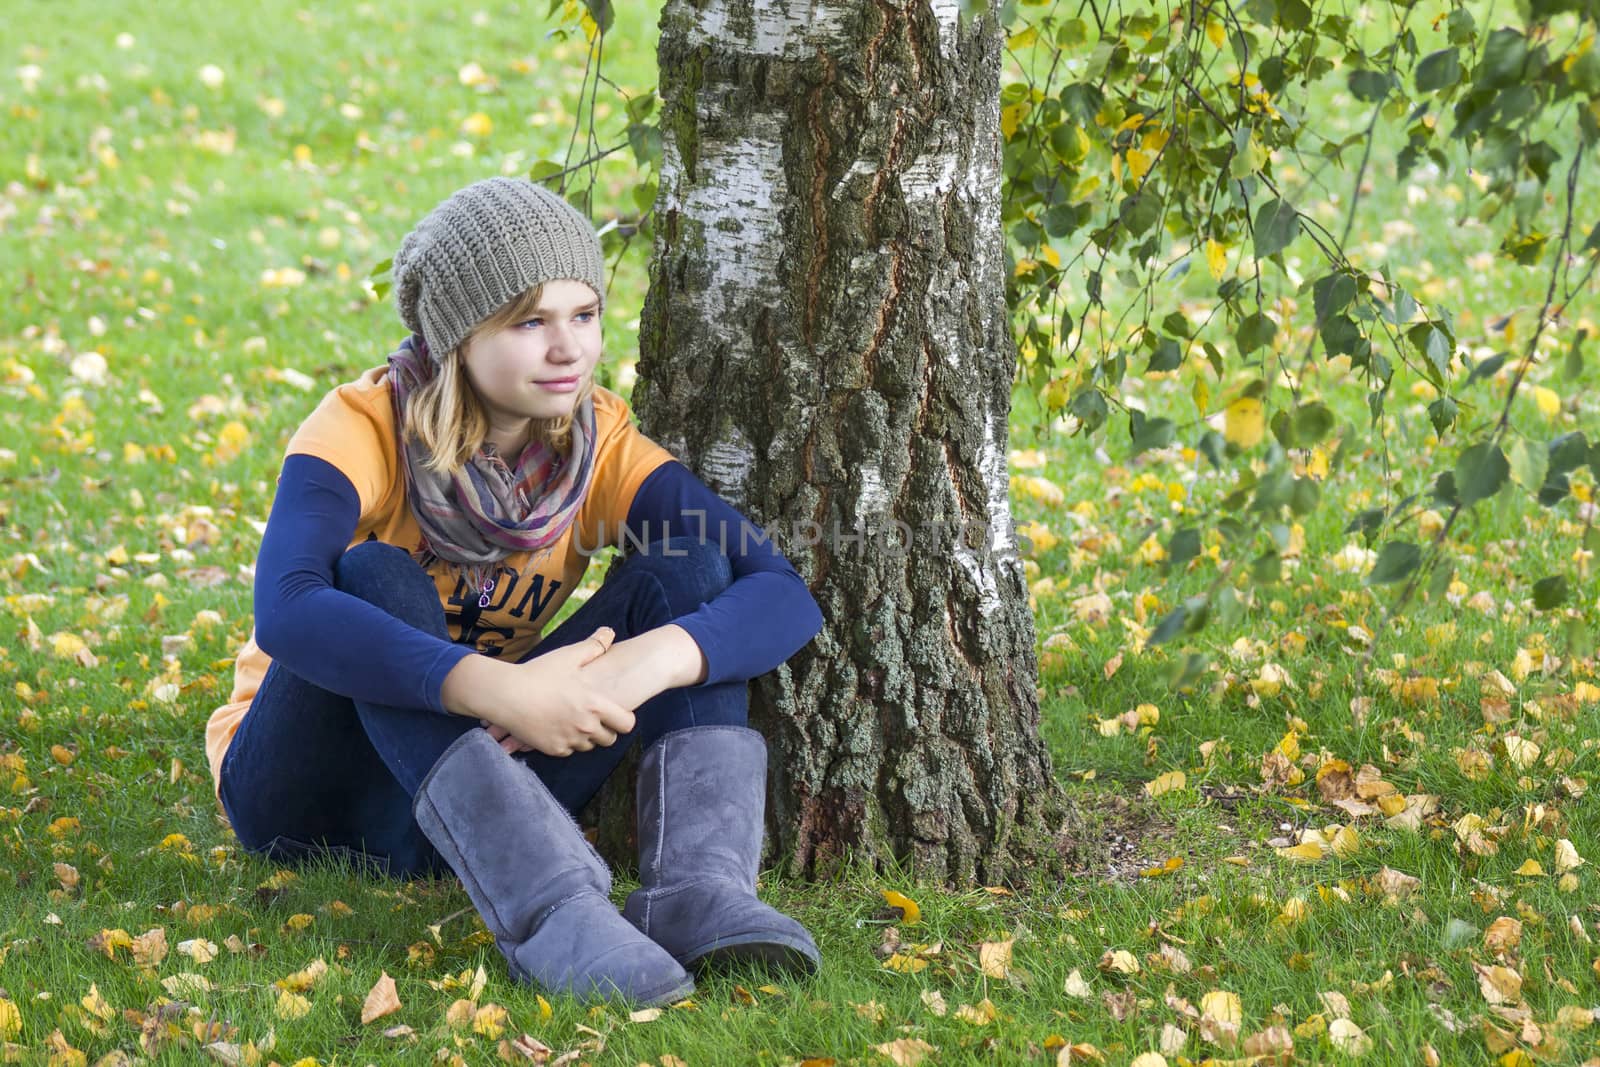 cute little girl in the autumn park